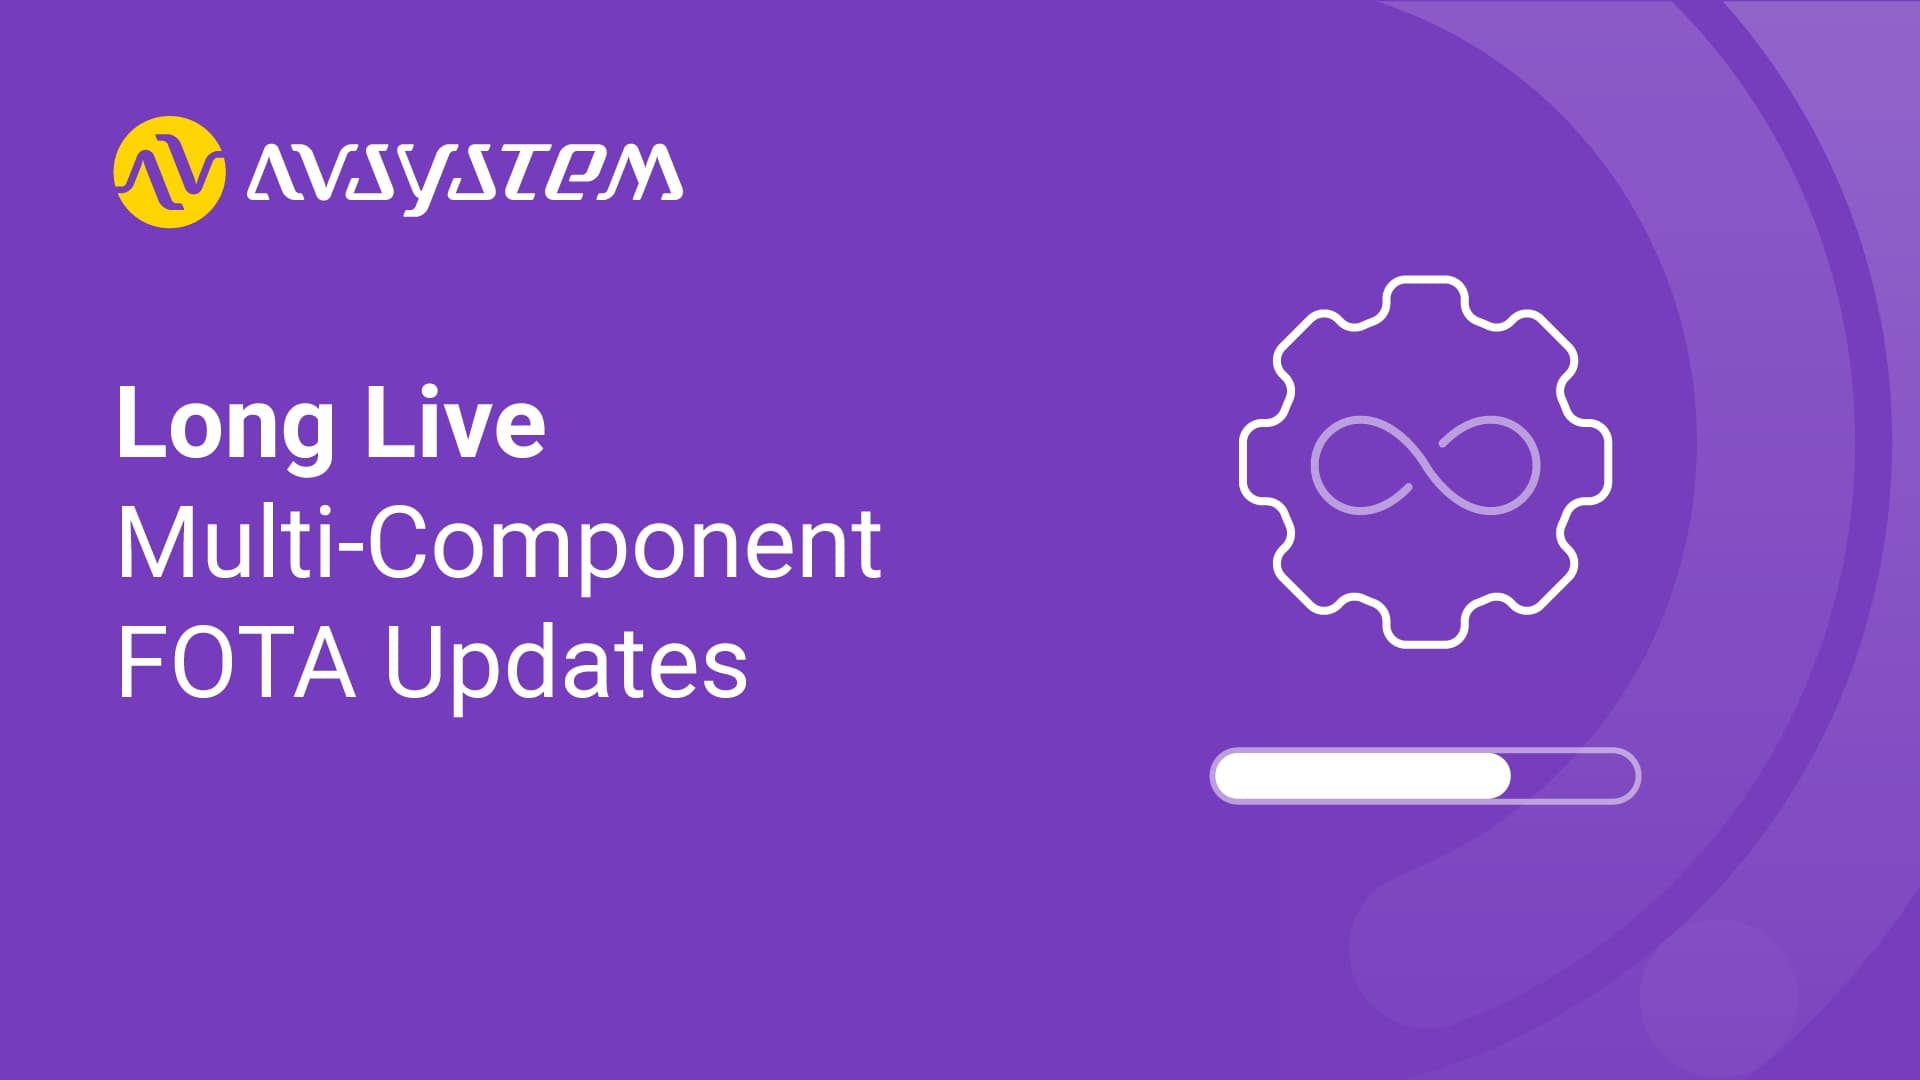 Long live multi-component FOTA updates